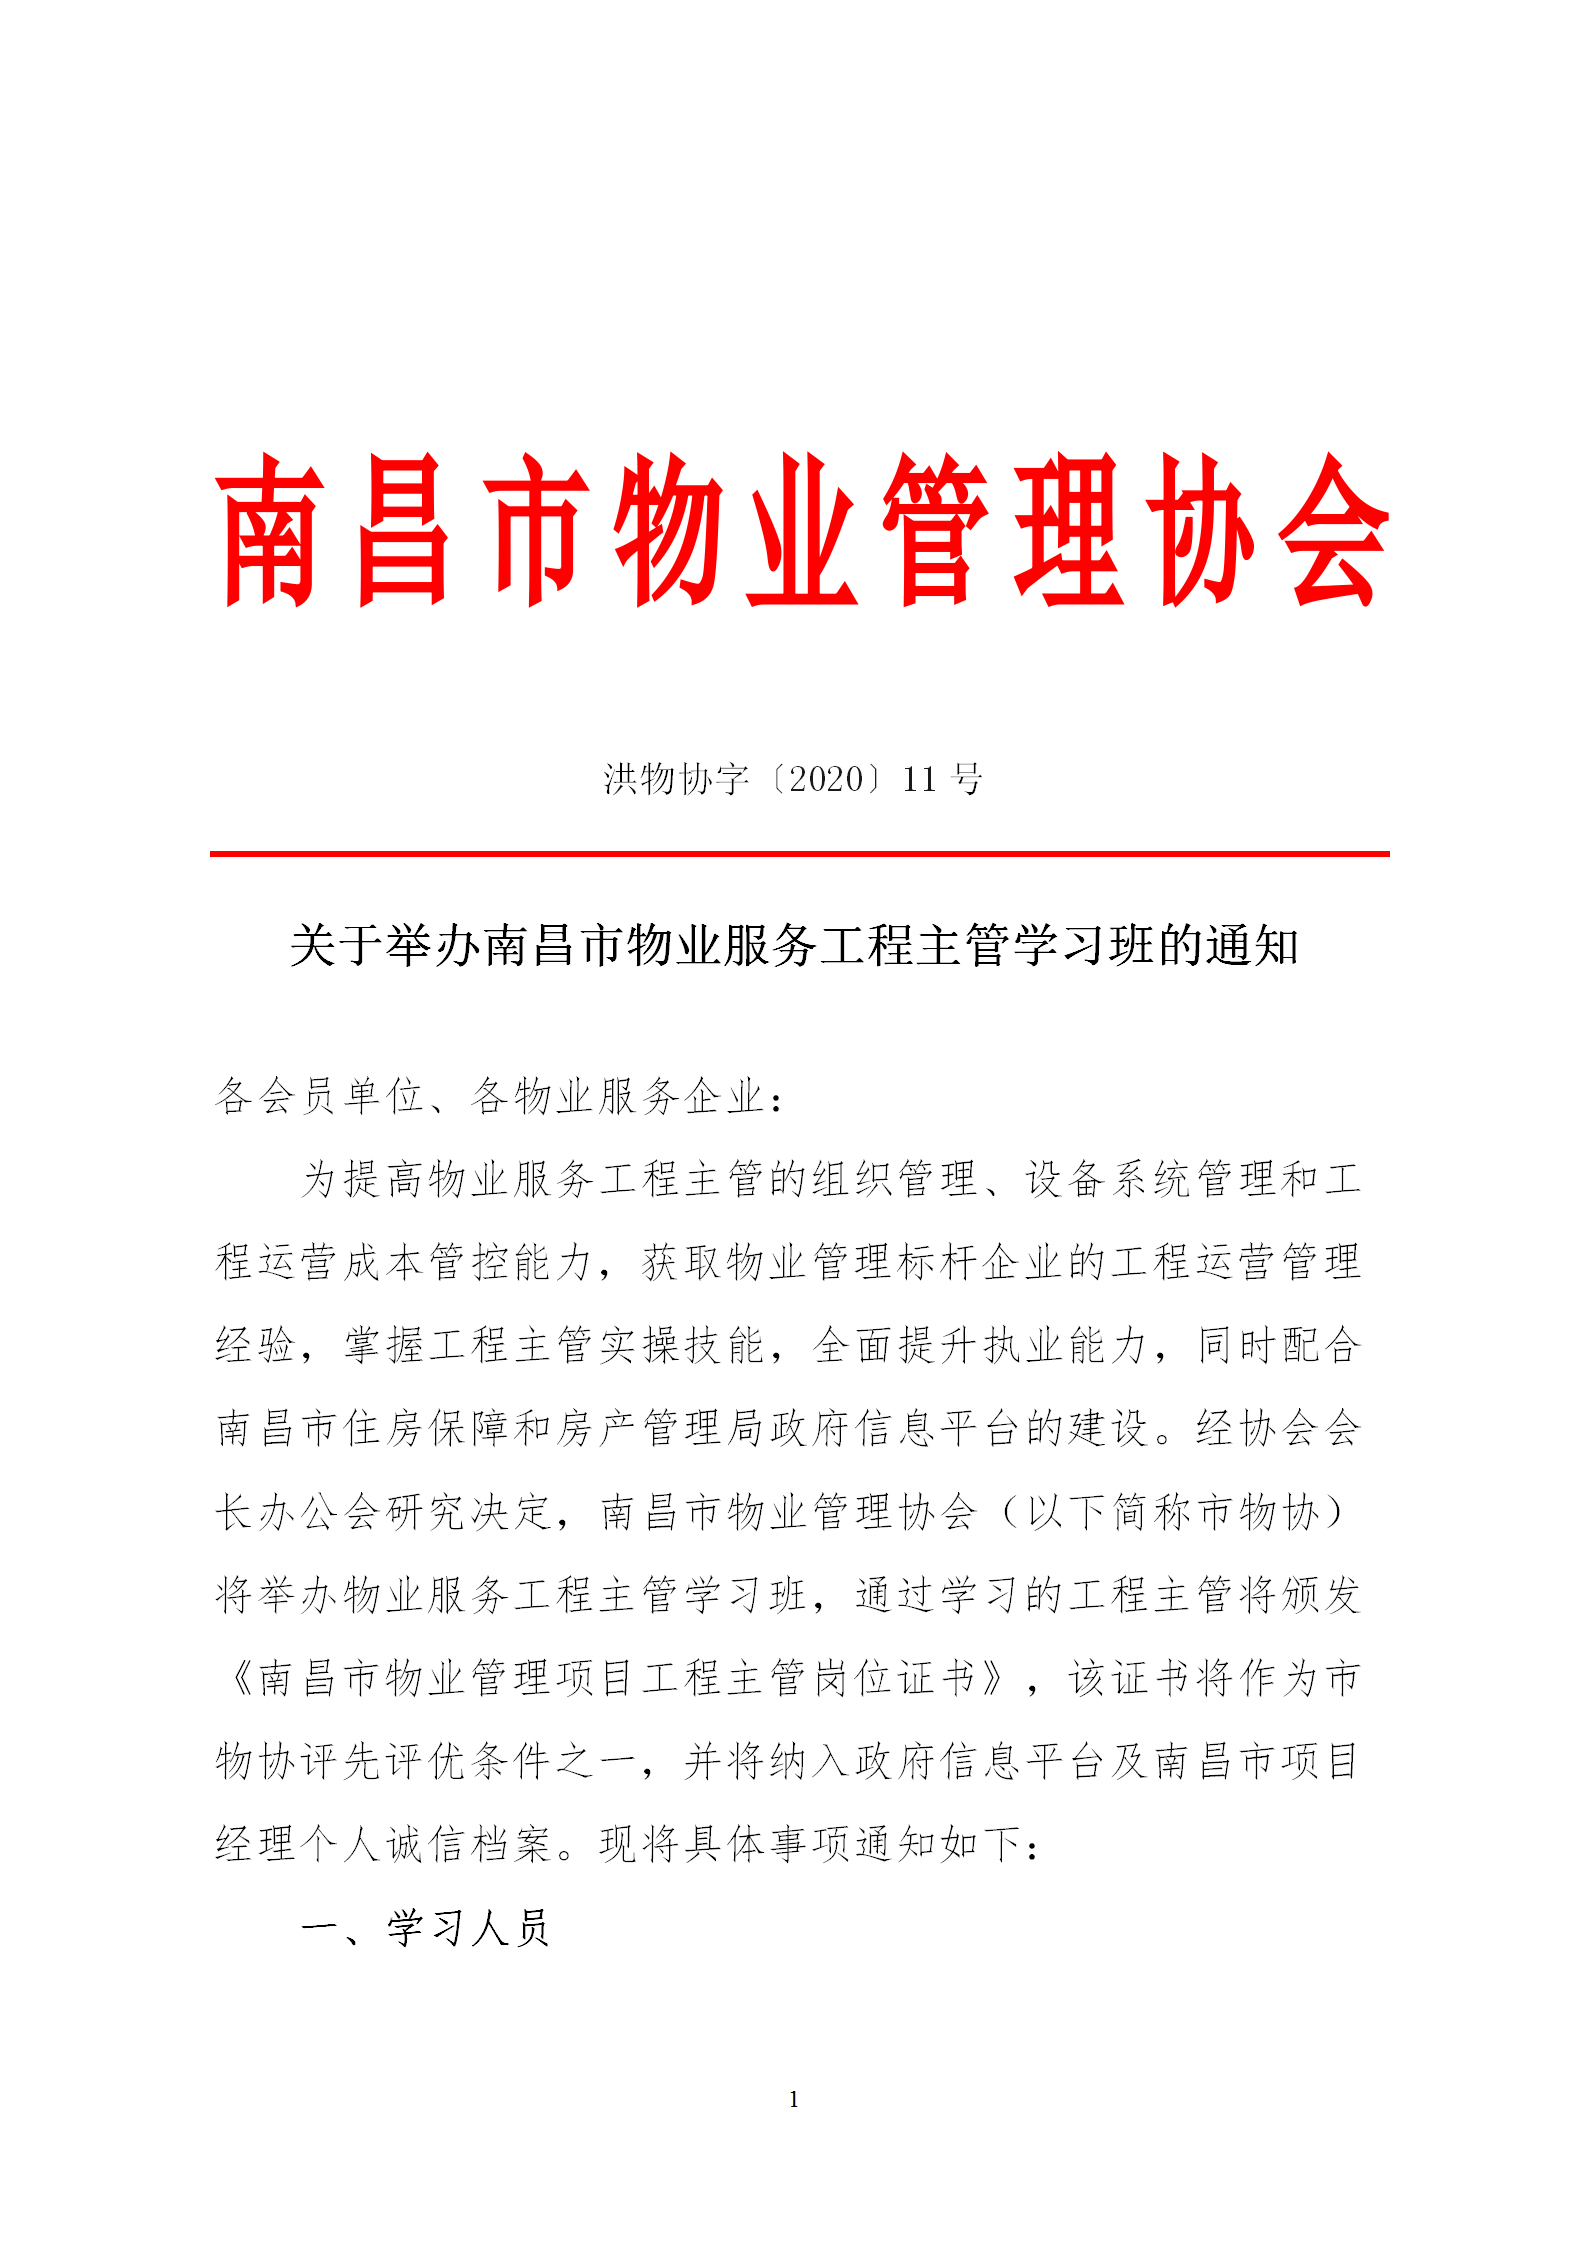 洪物协字[2020]11号 关于举办南昌市物业服务工程主管学习班的通知_01.png